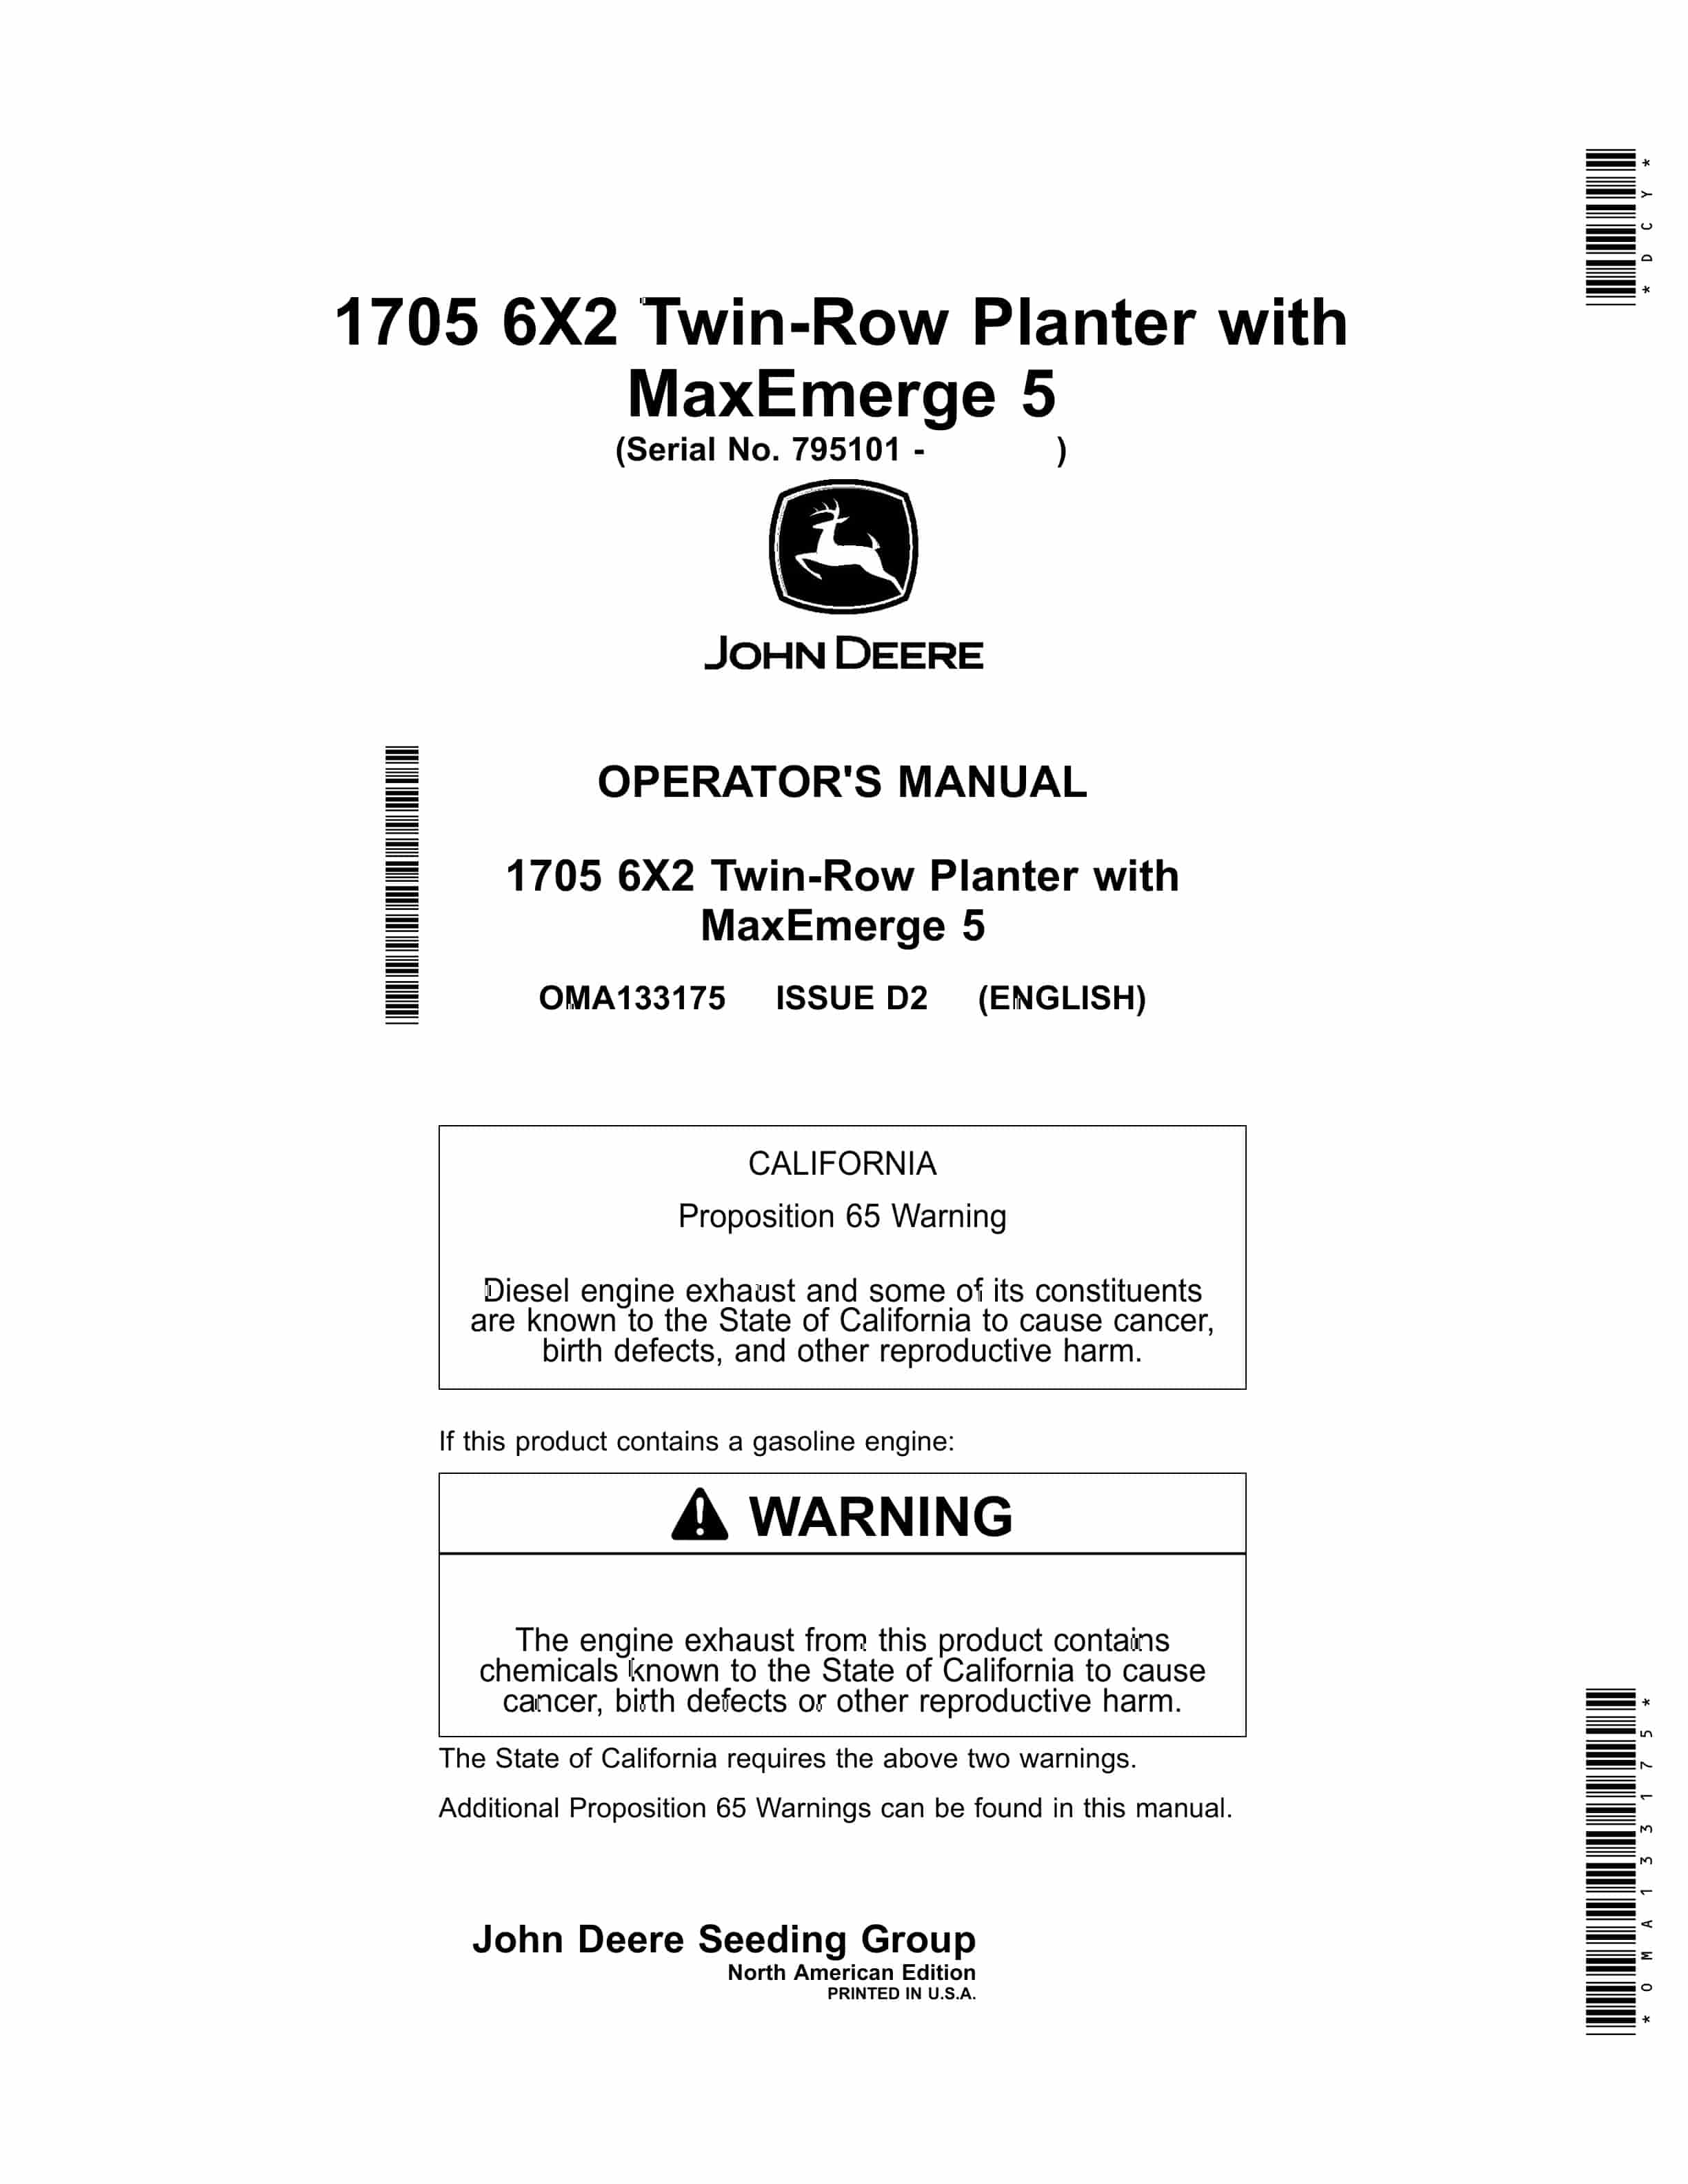 John Deere 1705 6X2 Twin Row Planter with MaxEmerge 5 Operator Manual OMA133175 1